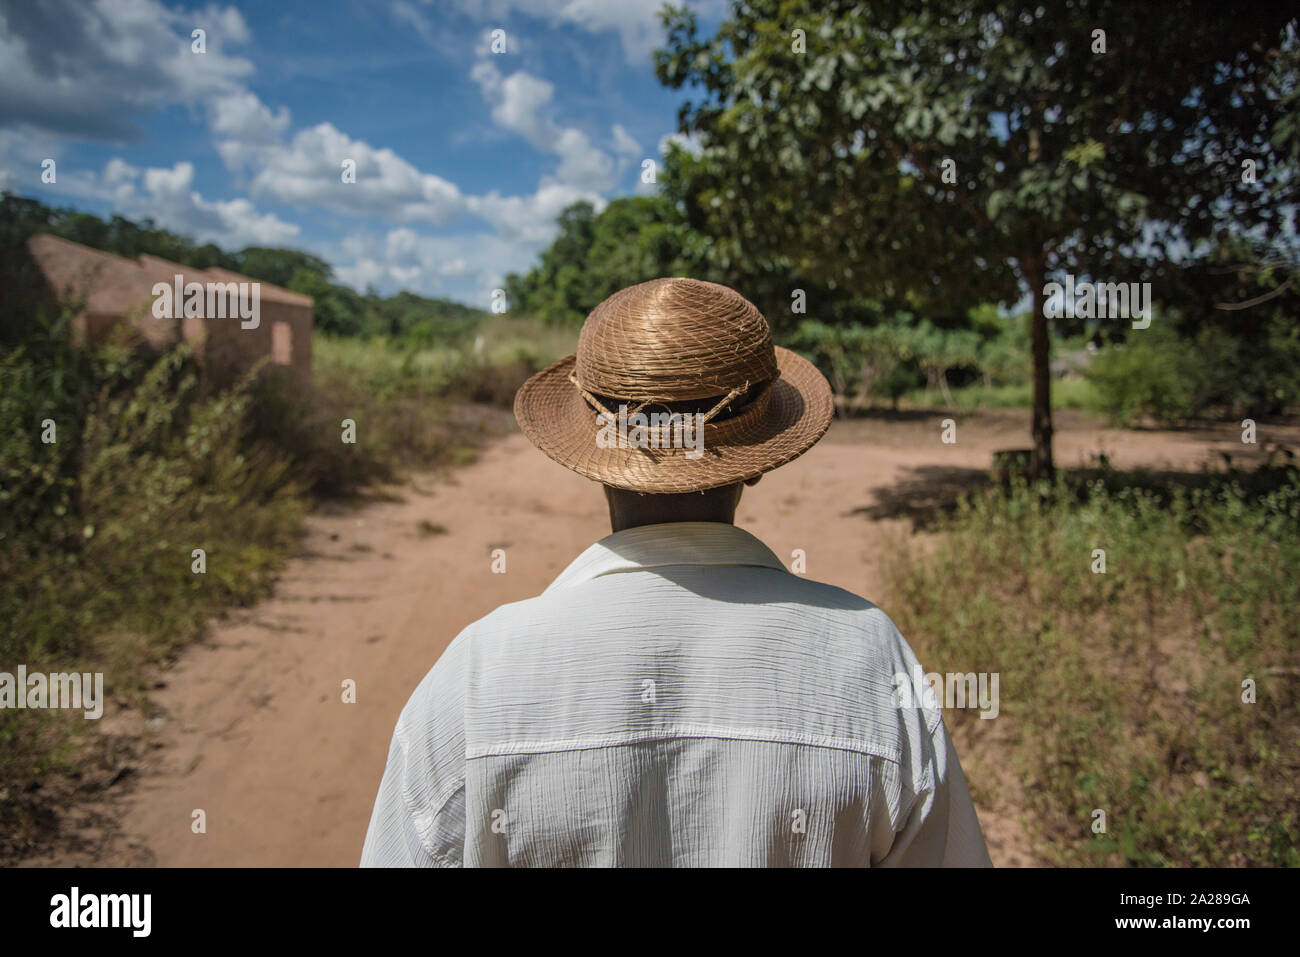 Farmer wearing wicker hat walking in a dirt road on countryside Stock Photo